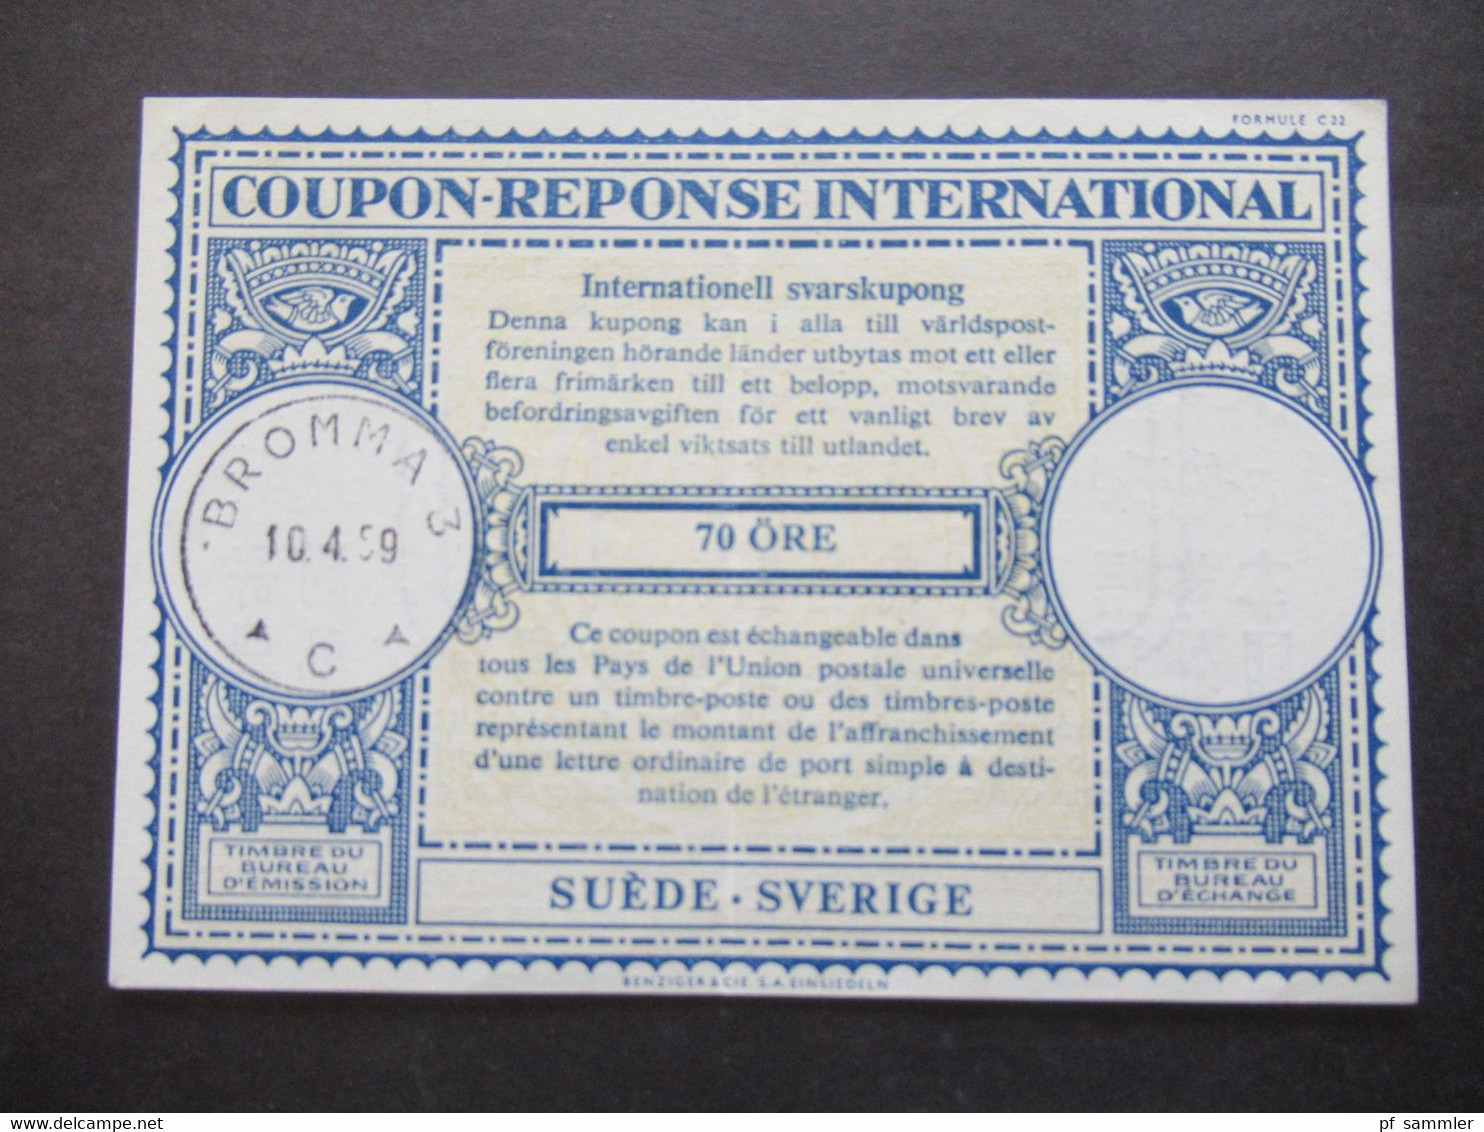 IAS Coupon Reponse International / Internationaler Antwortschein Schweden / Suede / Sverige Stempel 1959 Bromma - Covers & Documents